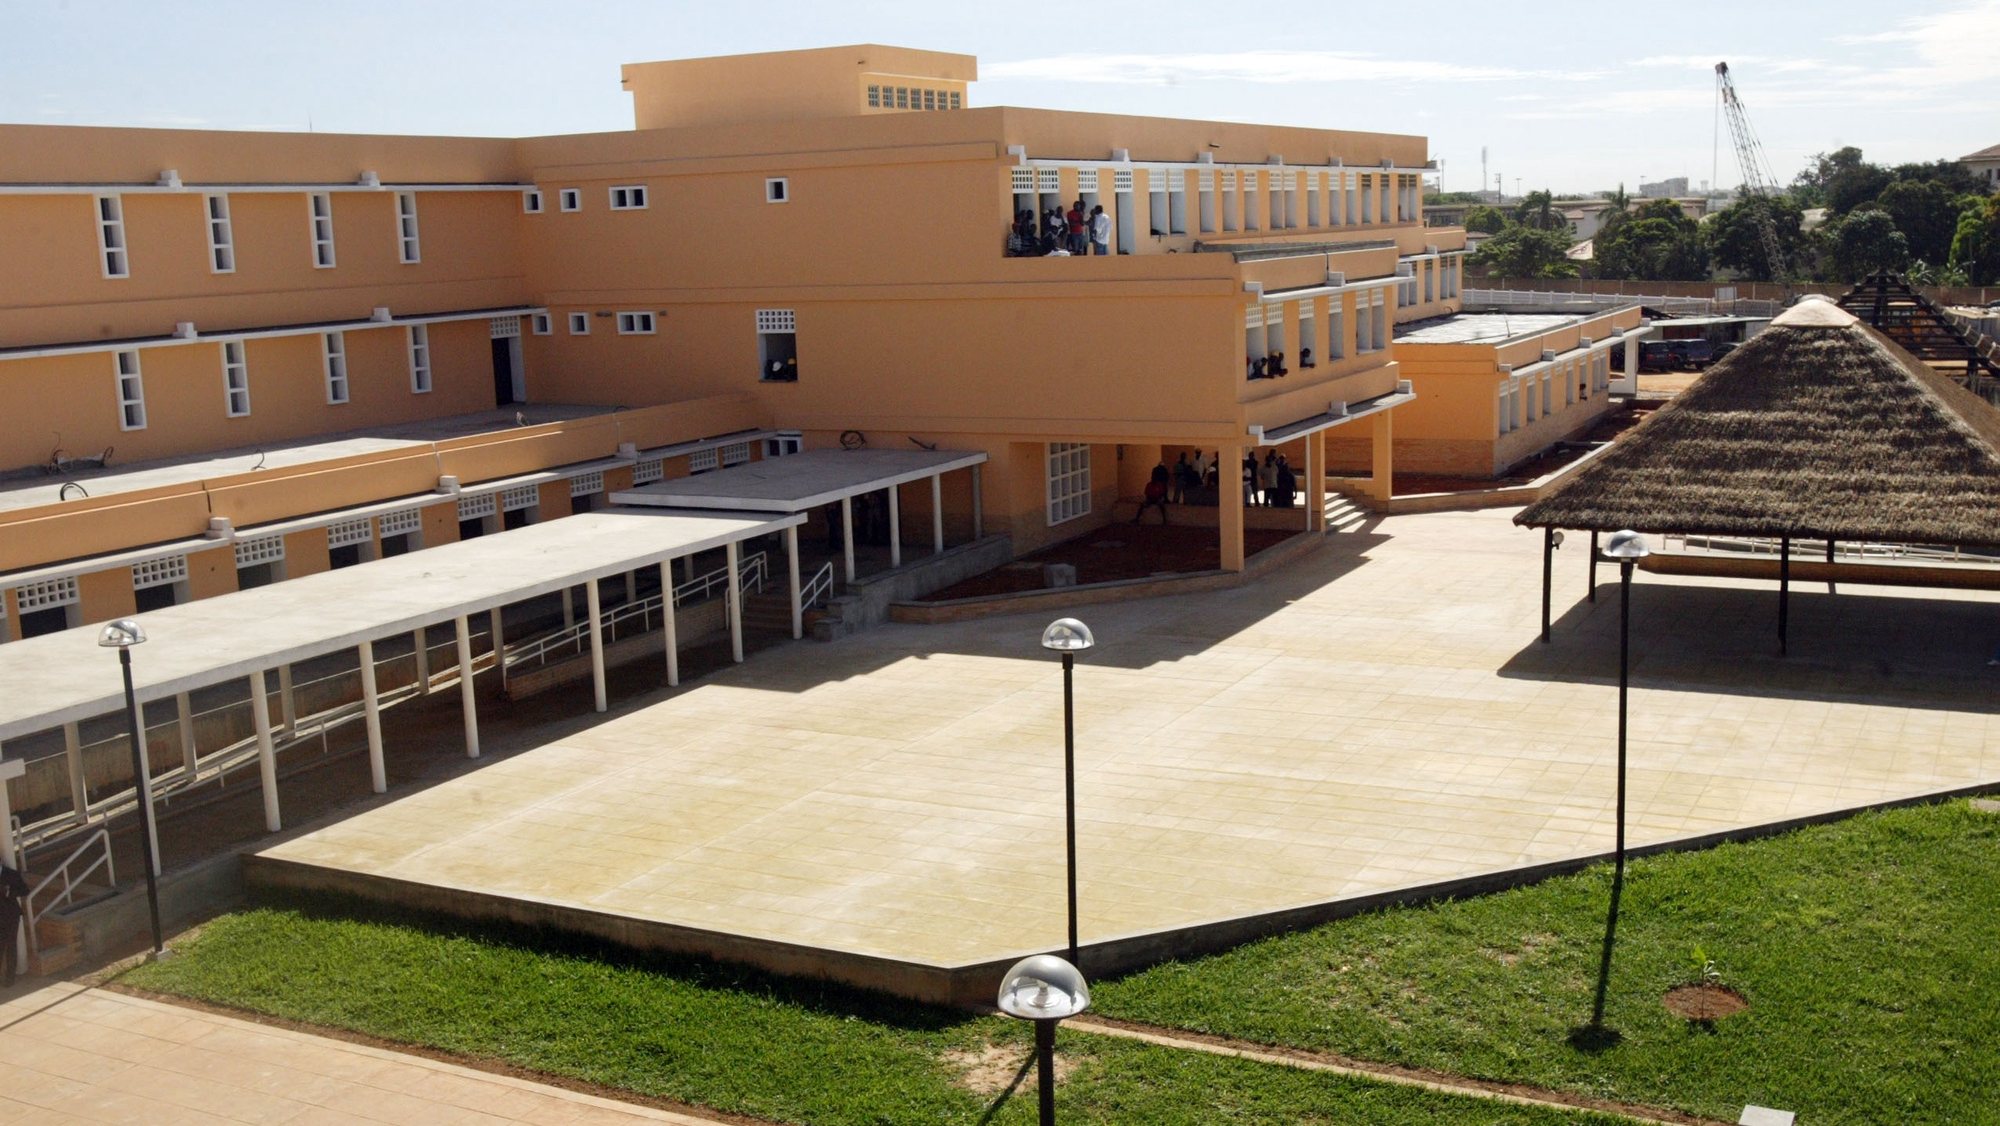 Instalações da Escola Portuguesa em Luanda. 
LUSA / ANTONIO COTRIM